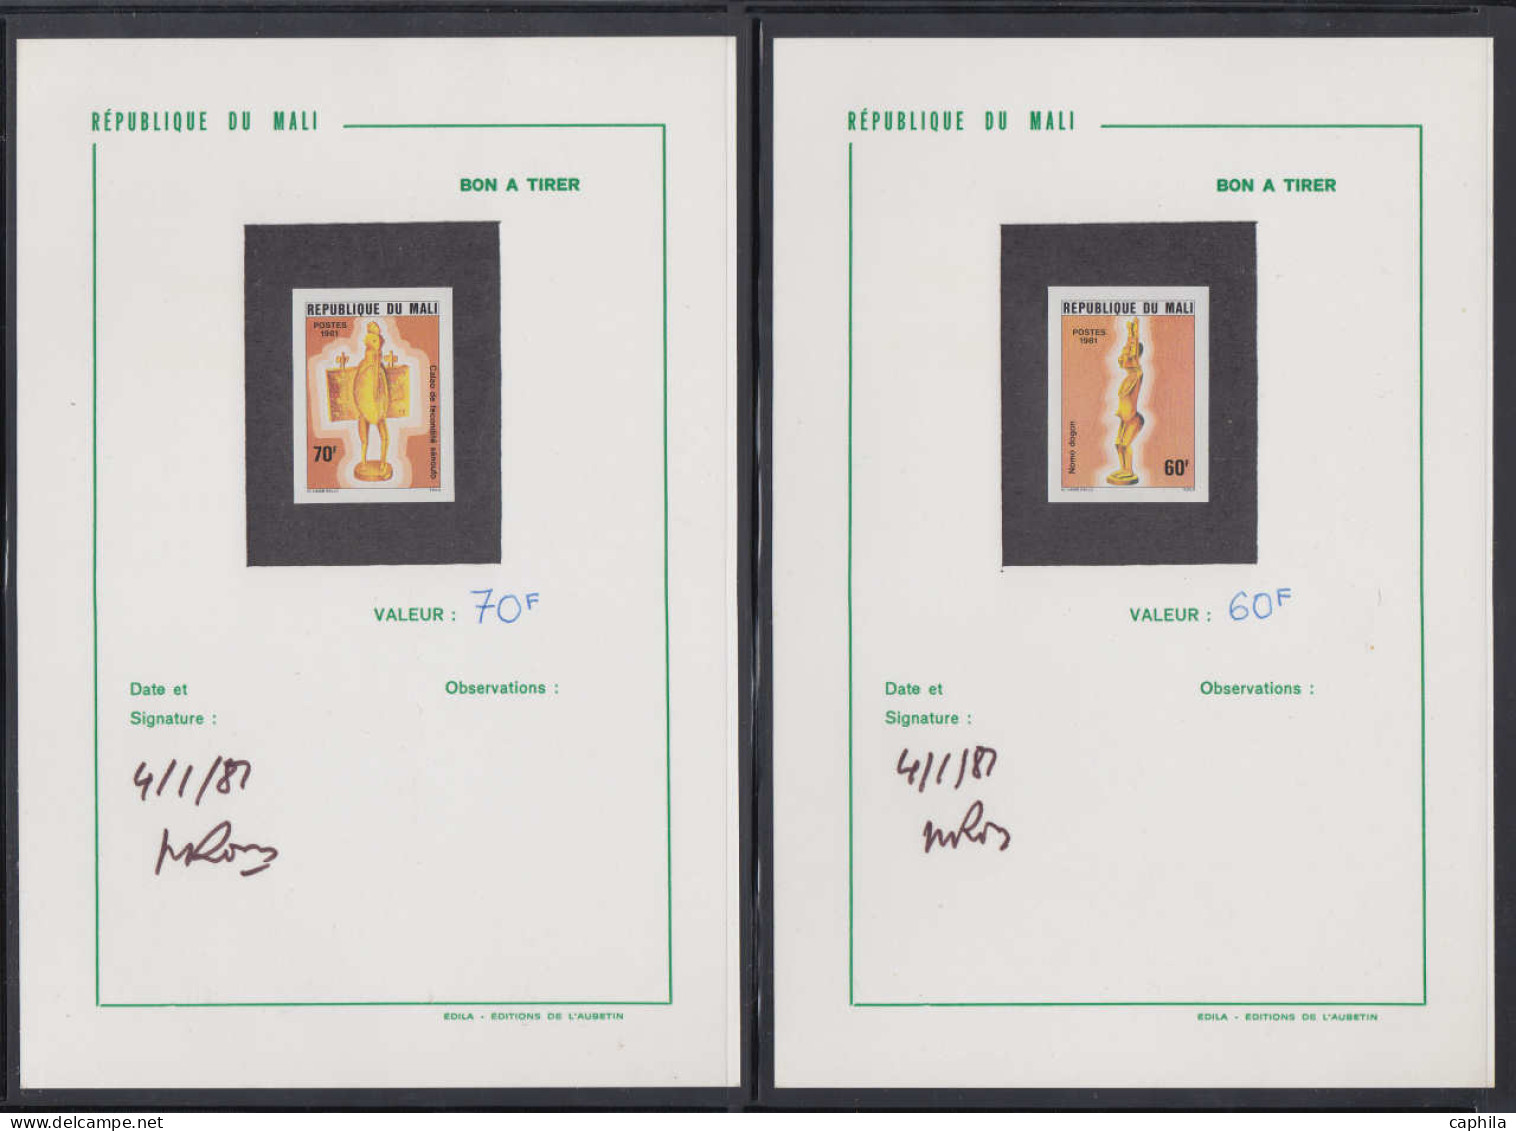 BAT COLONIES FRANCAISES - Epreuves d'Artiste - Collection de 69 bons à tirer, tous signés et datés (période 1980/88, Afr